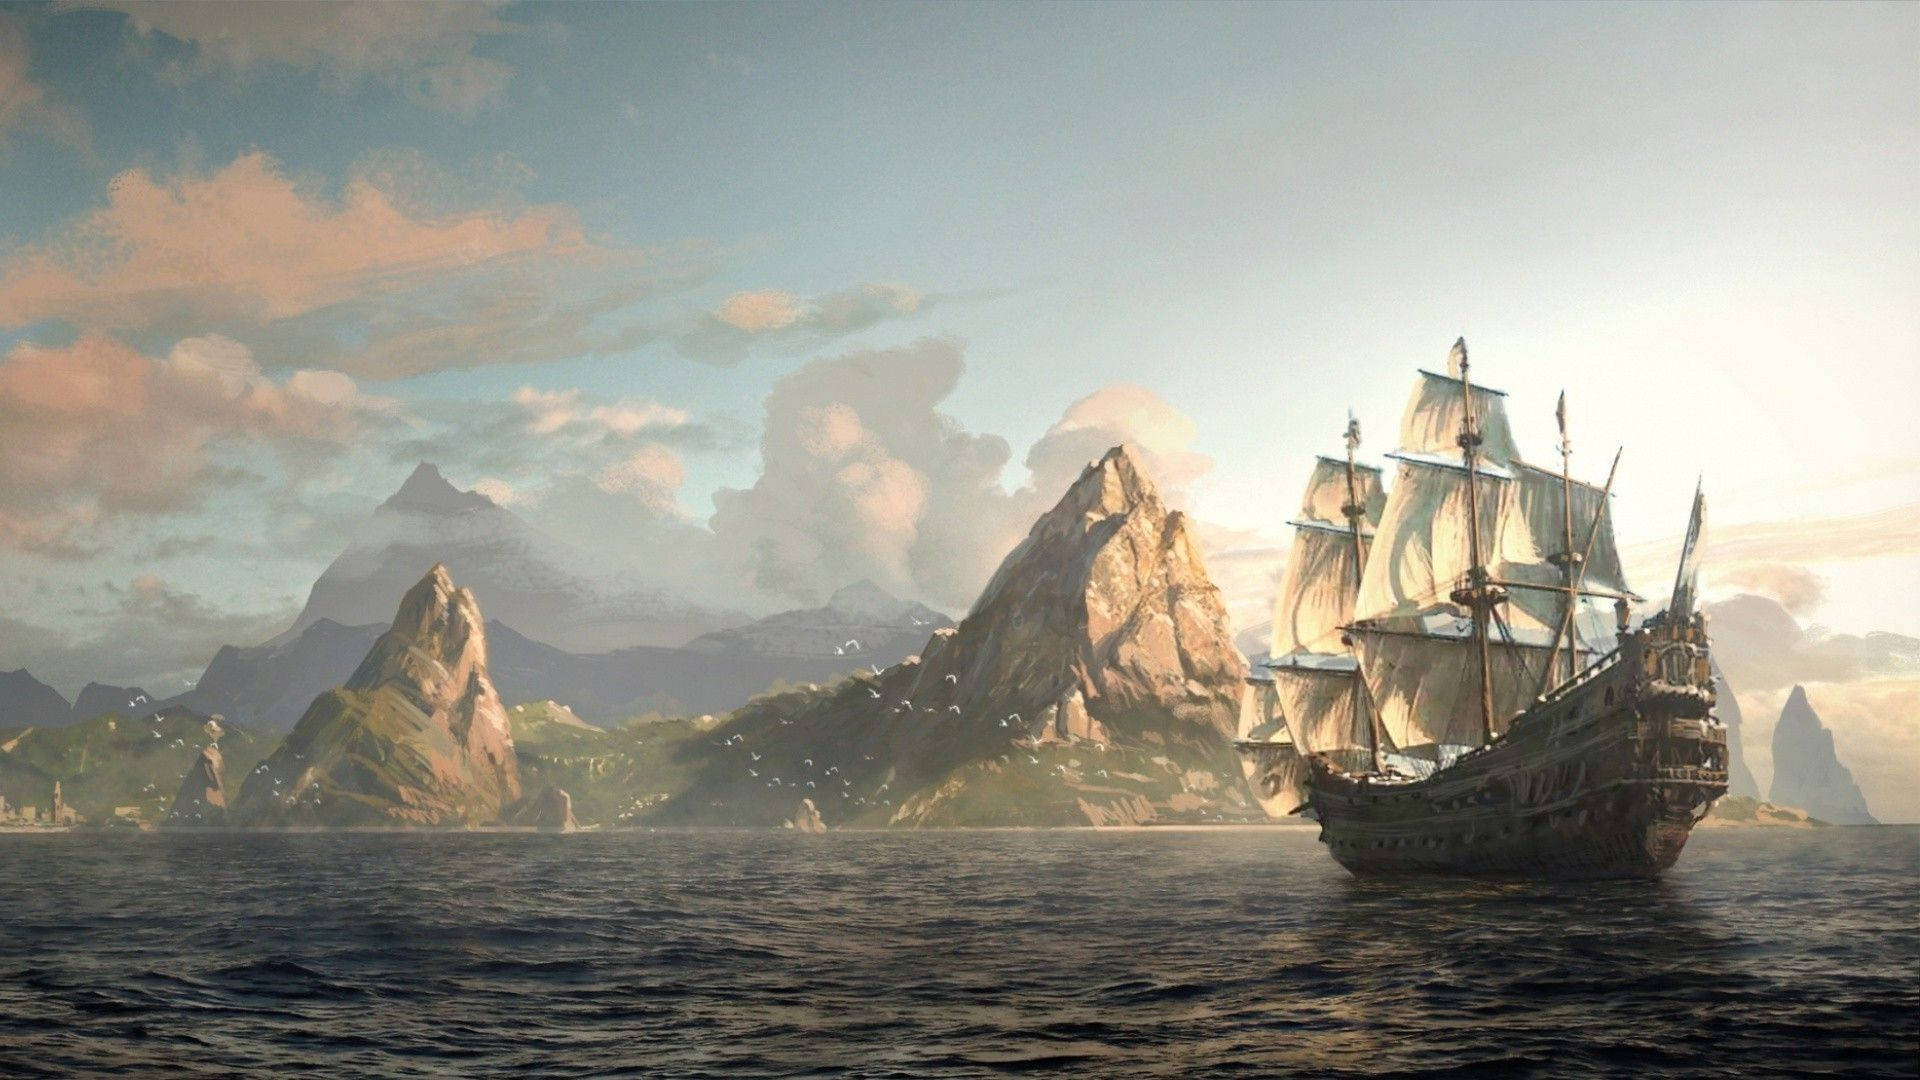 A ship of adventure awaits Wallpaper